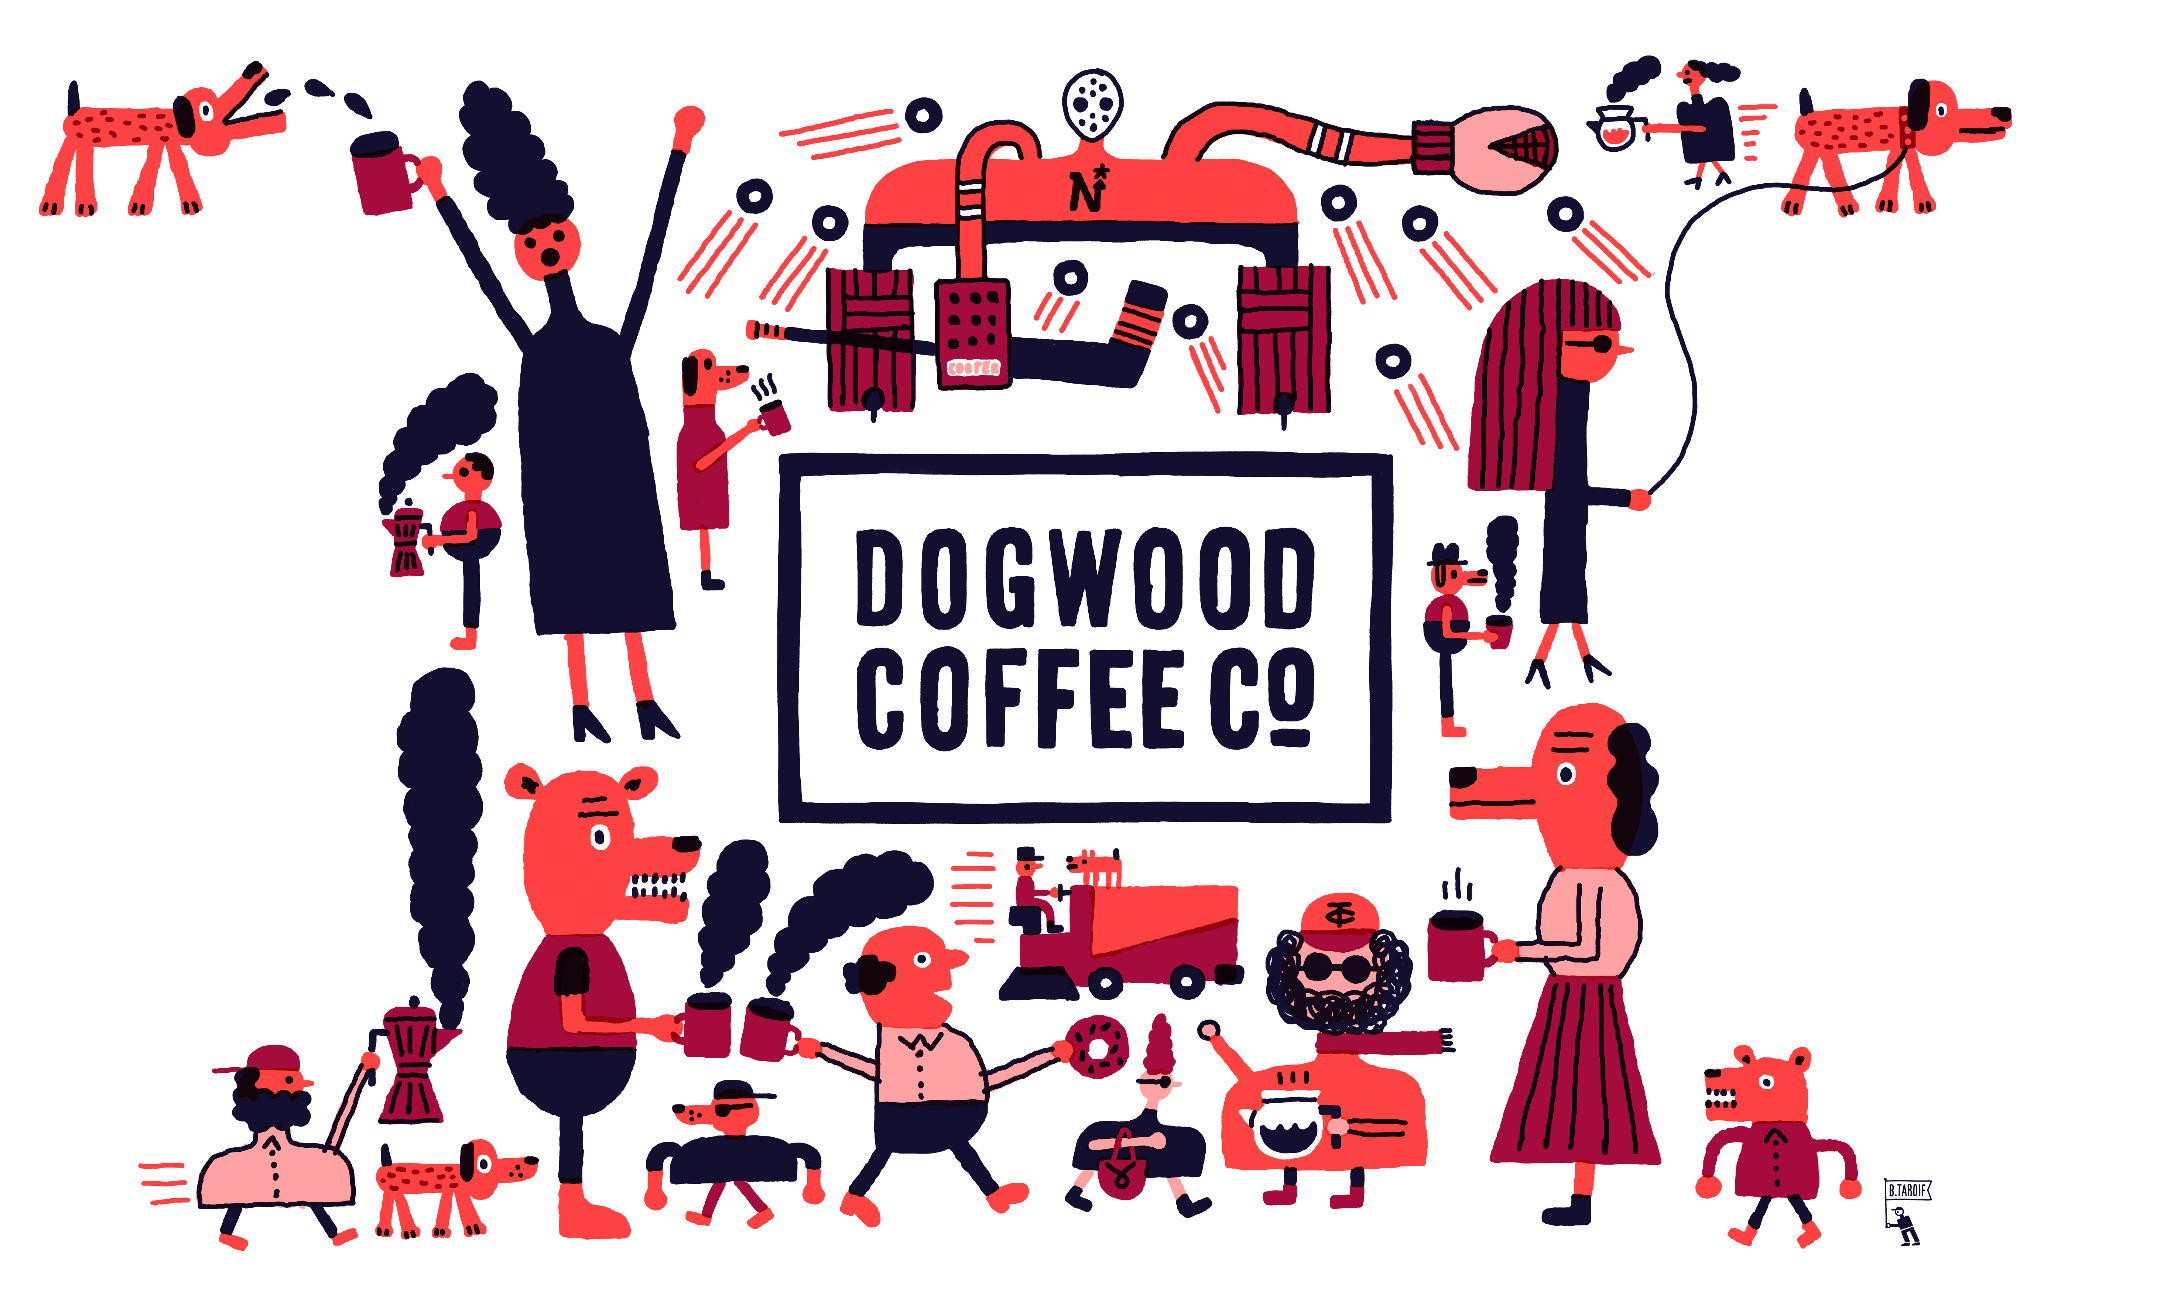 www.dogwoodcoffee.com